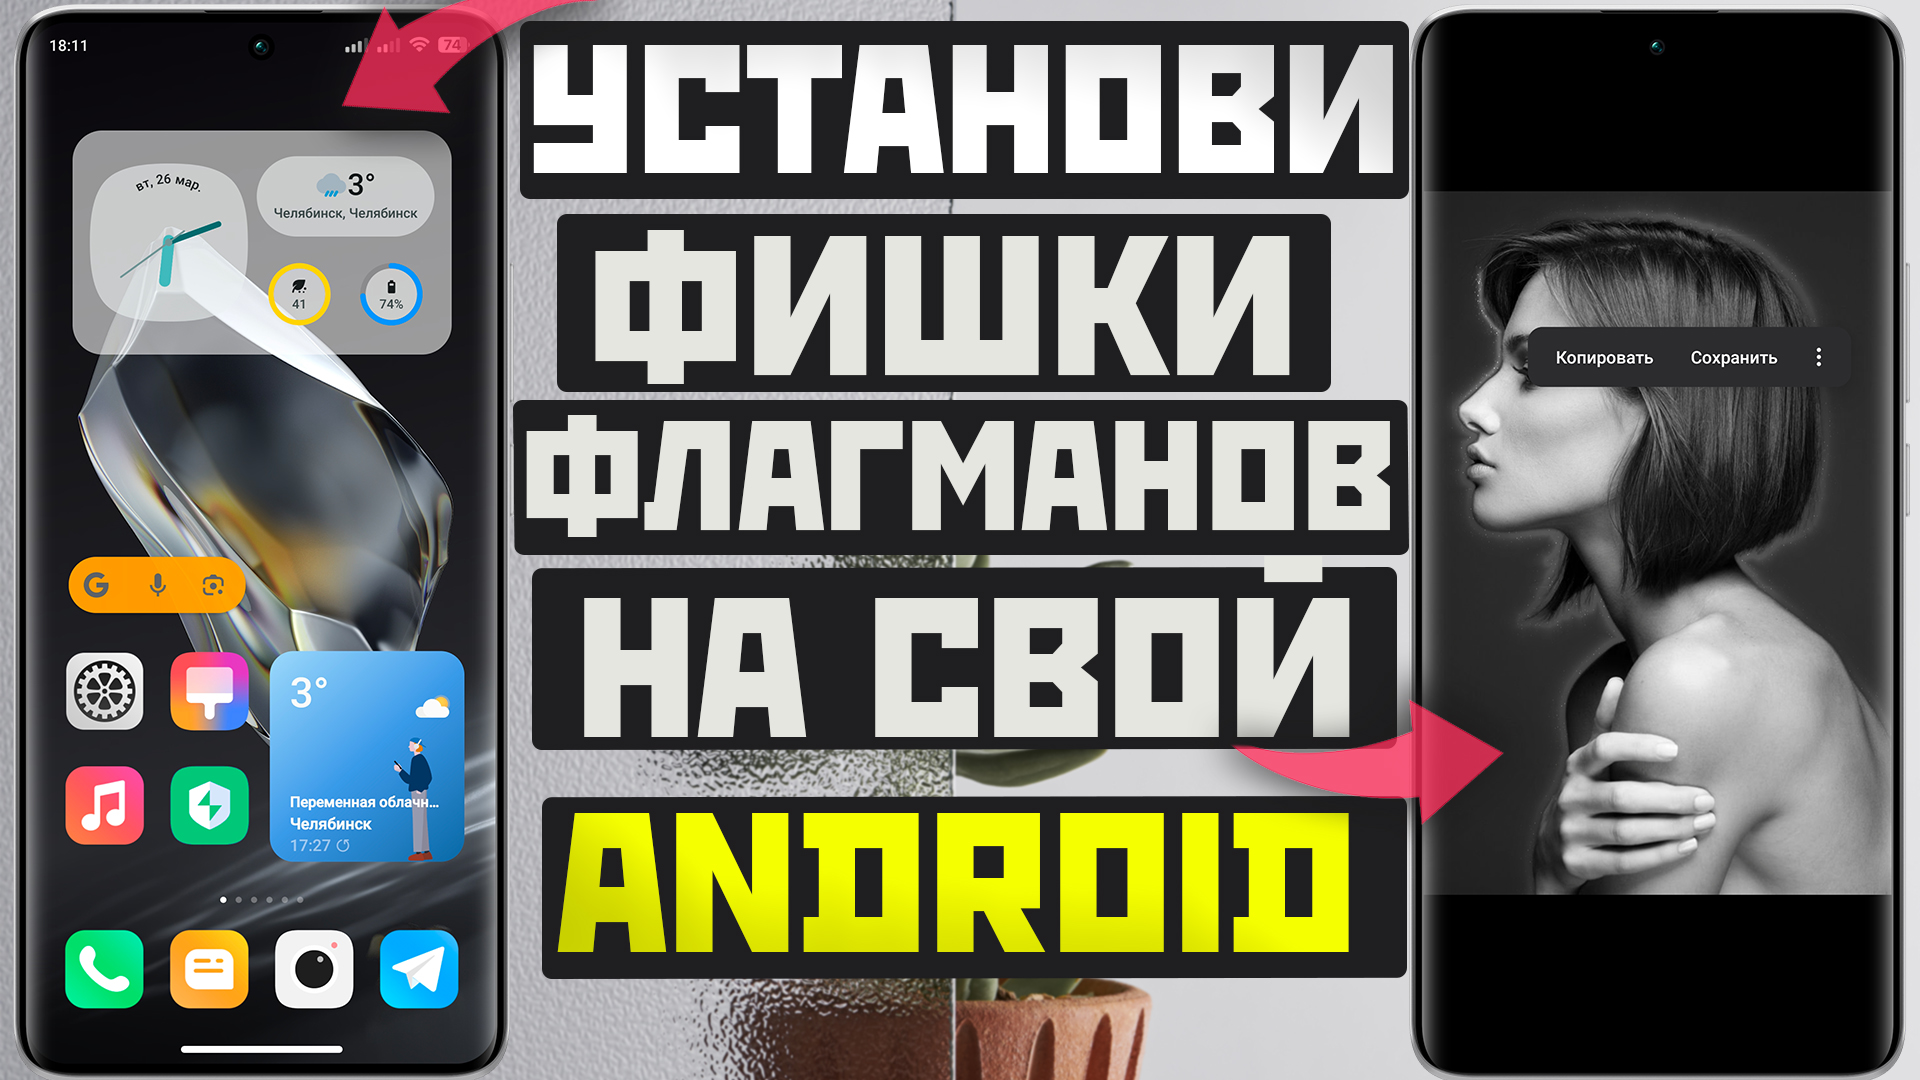 Флагманская Галерея XIAOMI на другие андроид + Виджет Motorola